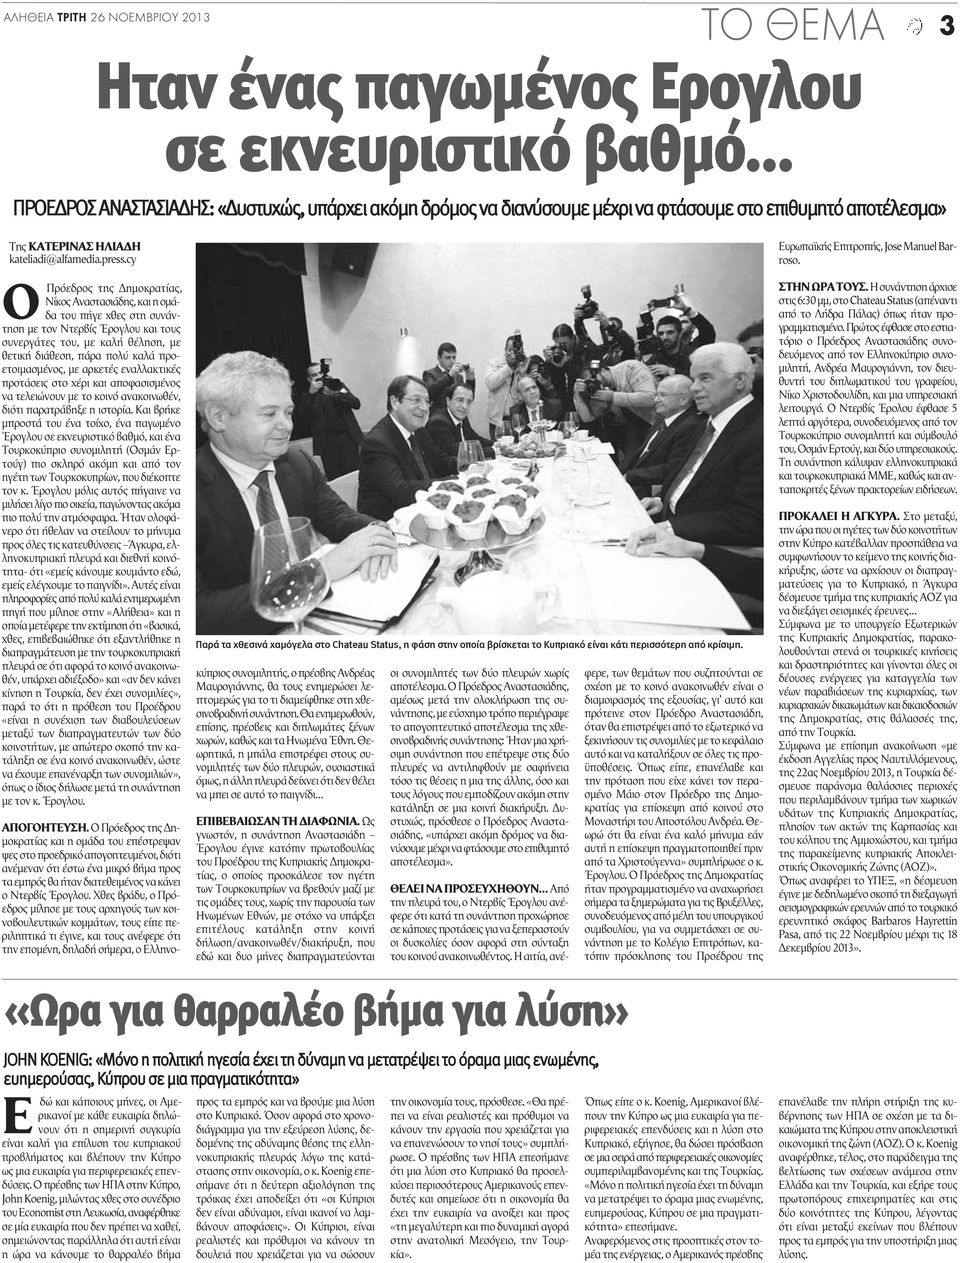 cy O Πρόεδρος της Δημοκρατίας, Νίκος Αναστασιάδης, και η ομάδα του πήγε χθες στη συνάντηση με τον Ντερβίς Έρογλου και τους συνεργάτες του, με καλή θέληση, με θετική διάθεση, πάρα πολύ καλά